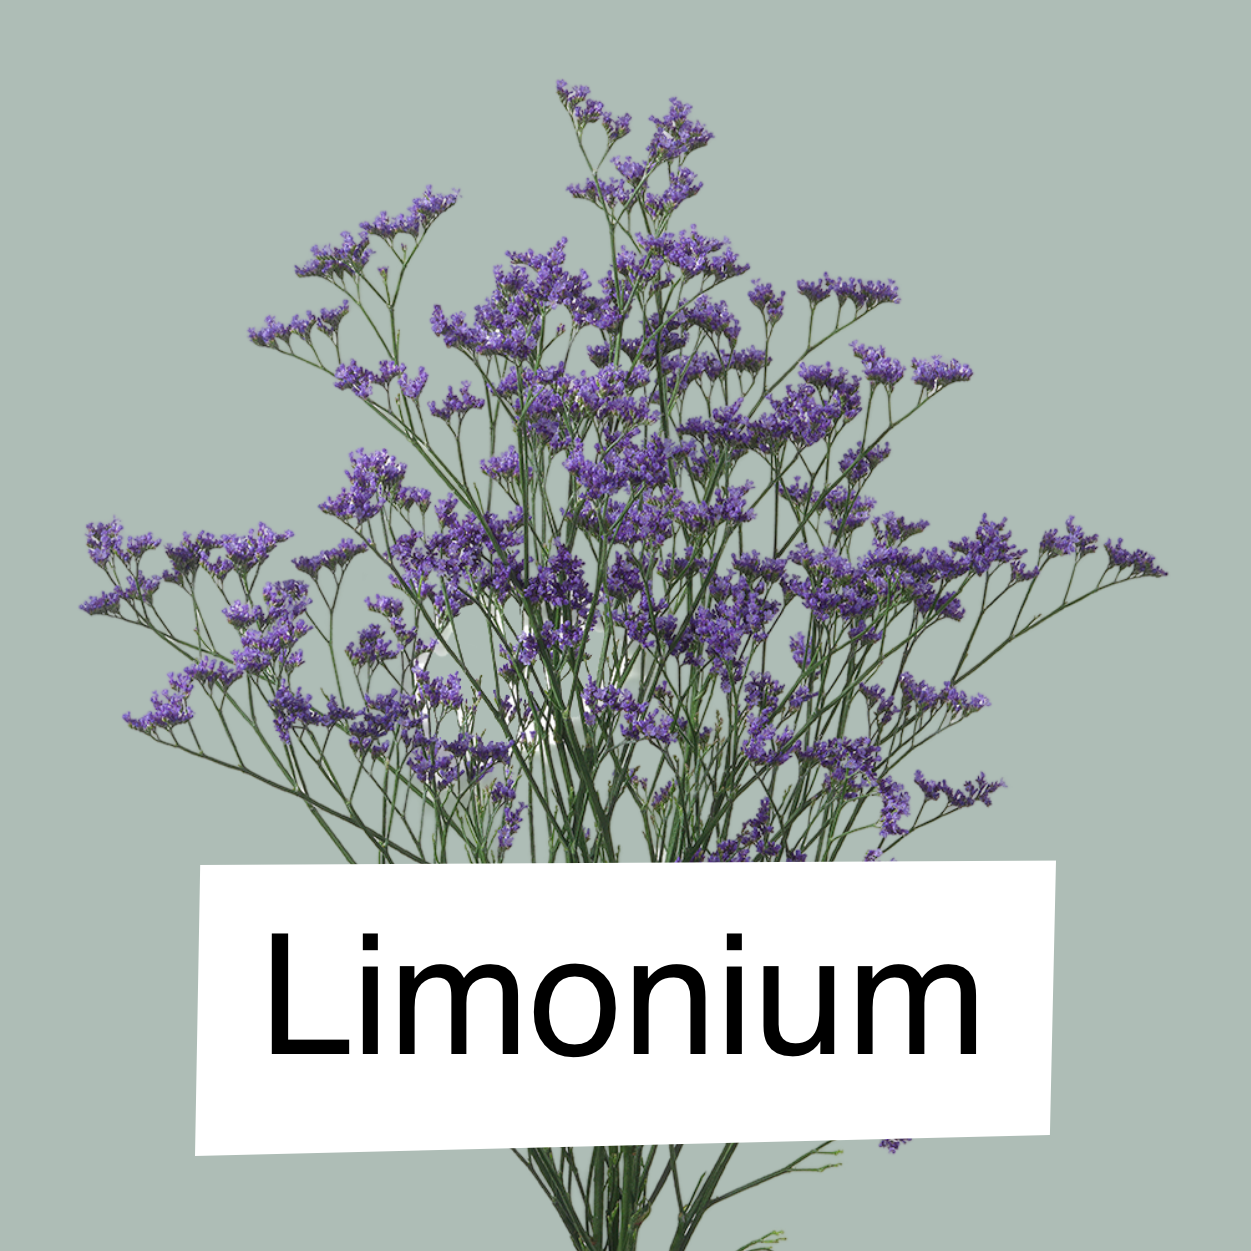 Limonium